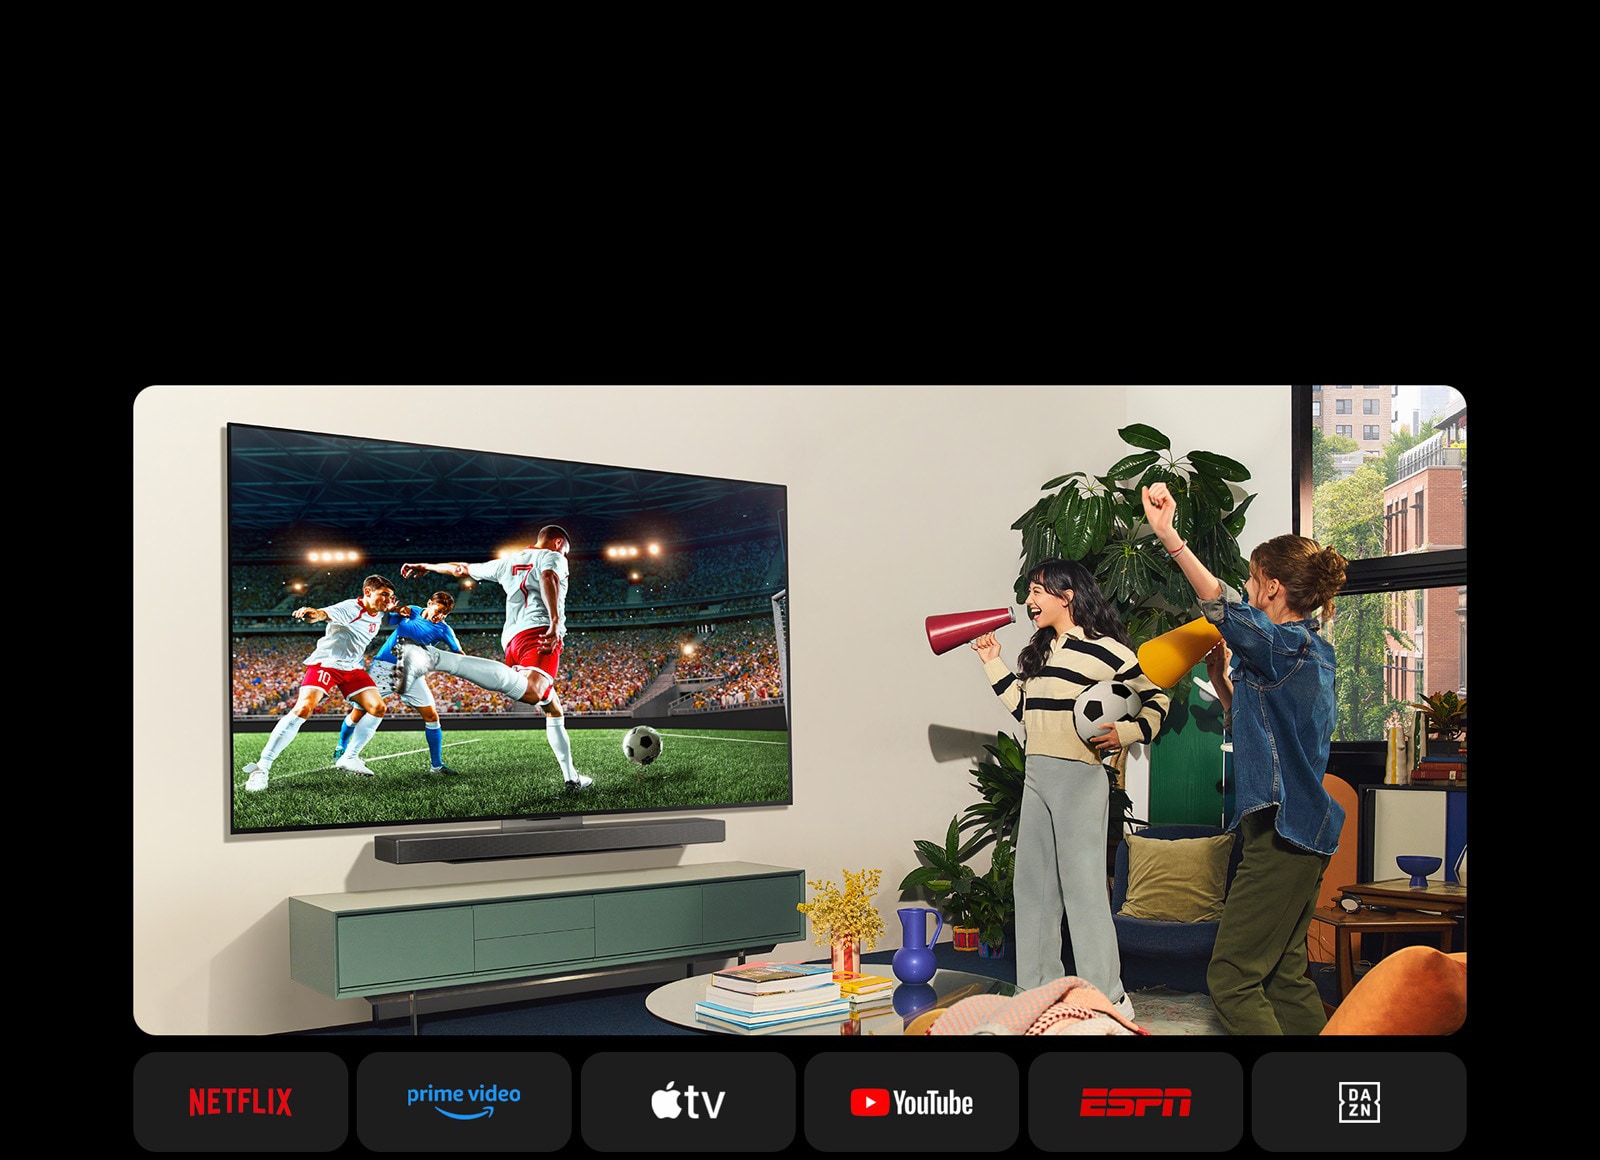 Deux femmes regardent un match de football dans un espace confortable. Une femme tient à ballon de football et toutes deux supportent leur équipe avec des haut-parleurs jaunes et rouges. Les logos suivants sont affichés en dessous. Netflix, Amazon Prime Video, Apple TV, Youtube, ESPN et DAZN.